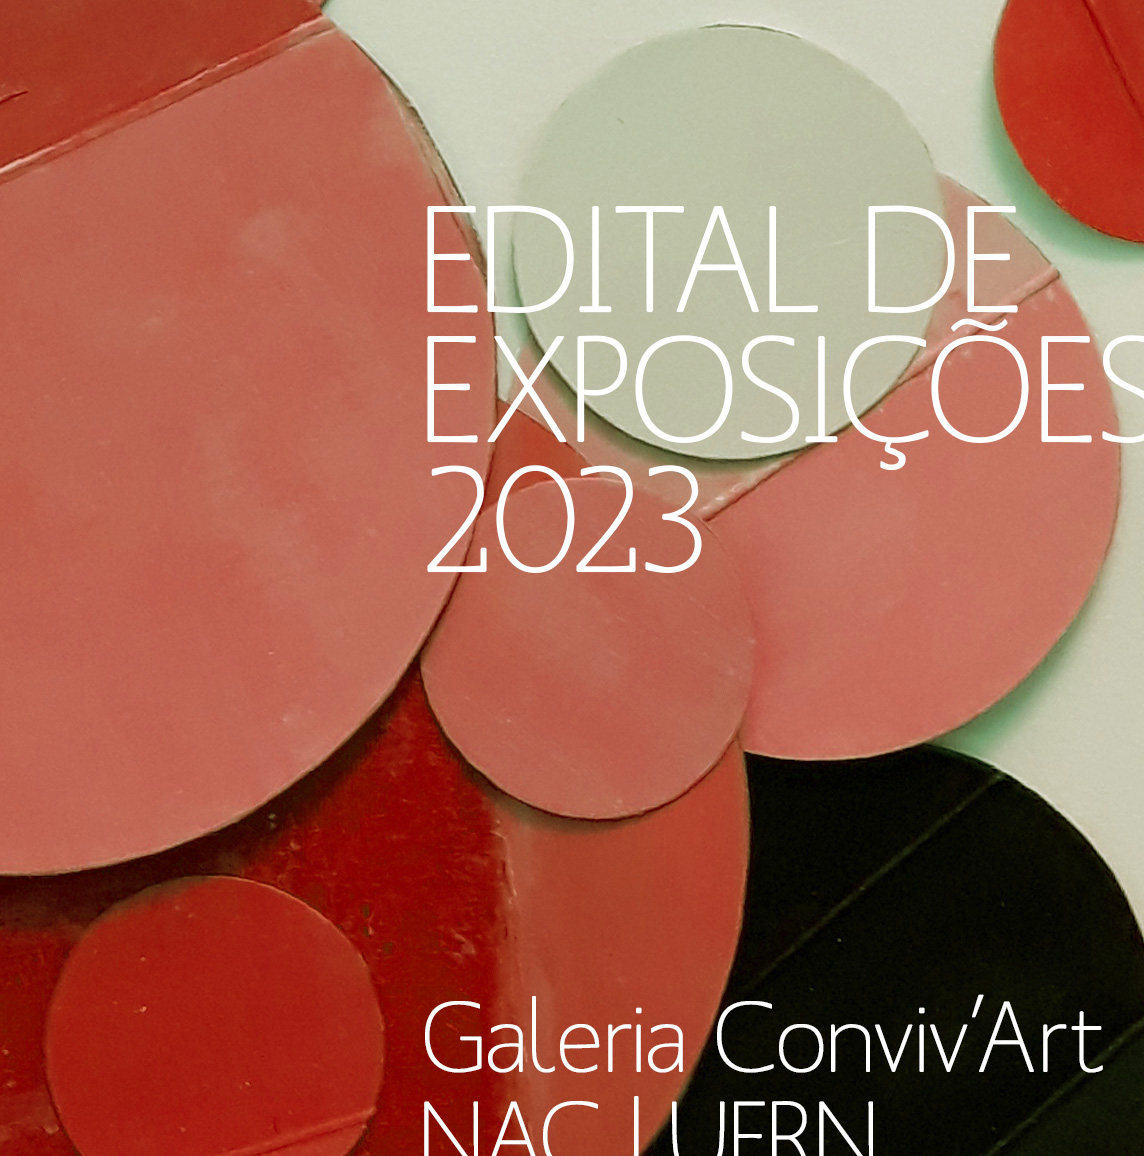 Aberto o edital para exposições na Galeria Conviv'Art em 2023